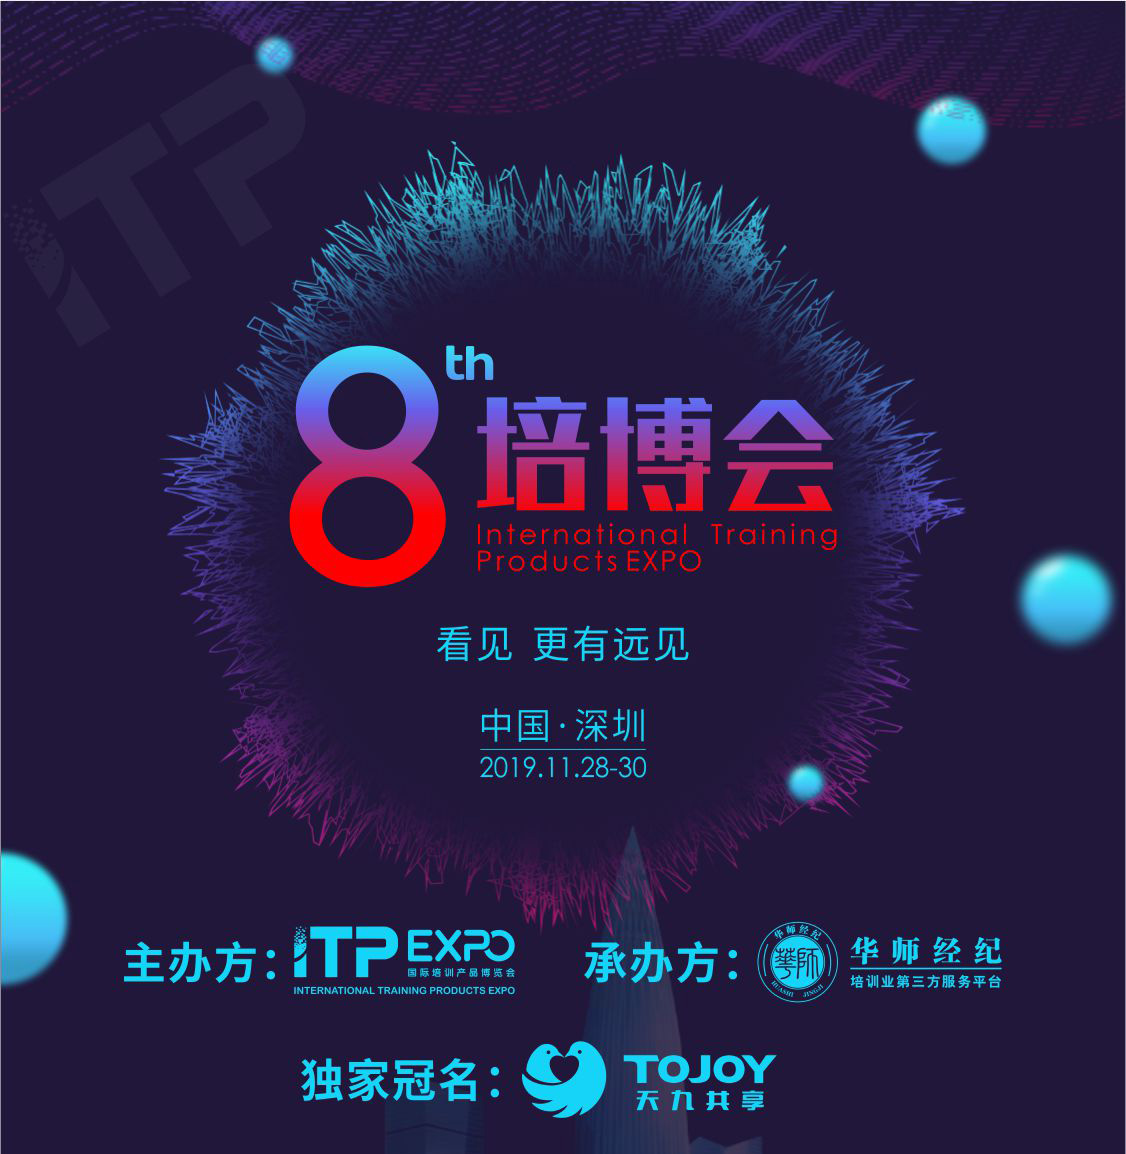 2019国际培训产品博览会(培博会)宣传H5长图(1)_01.jpg